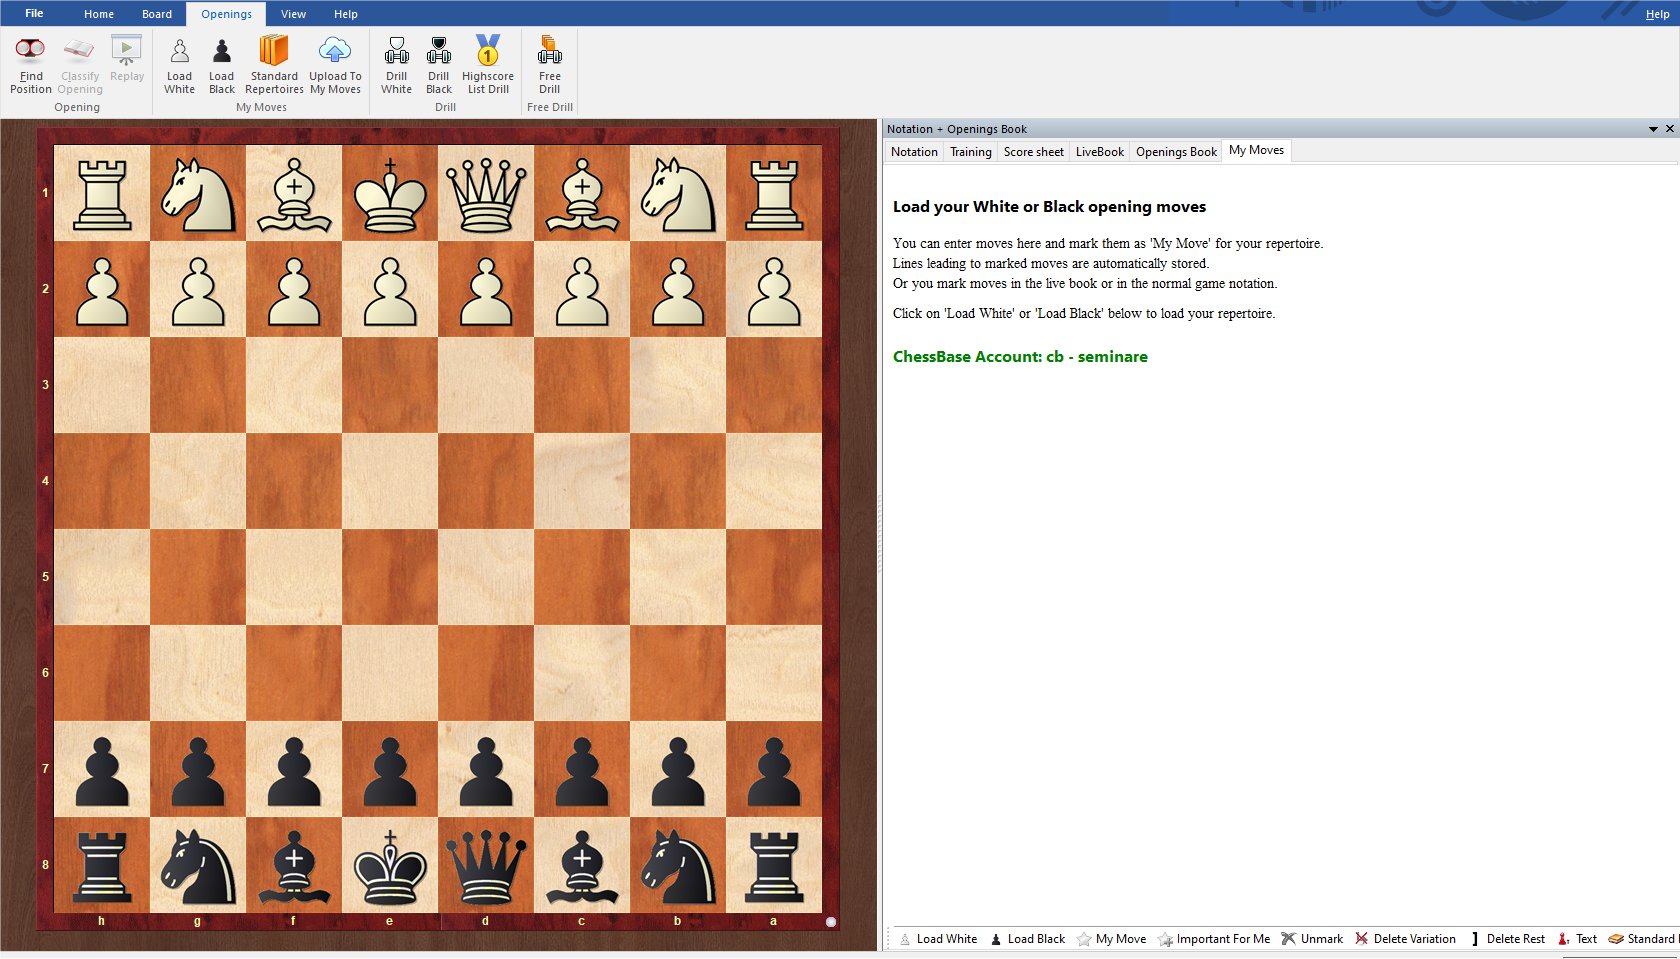 Fritz Online - ChessBase Account